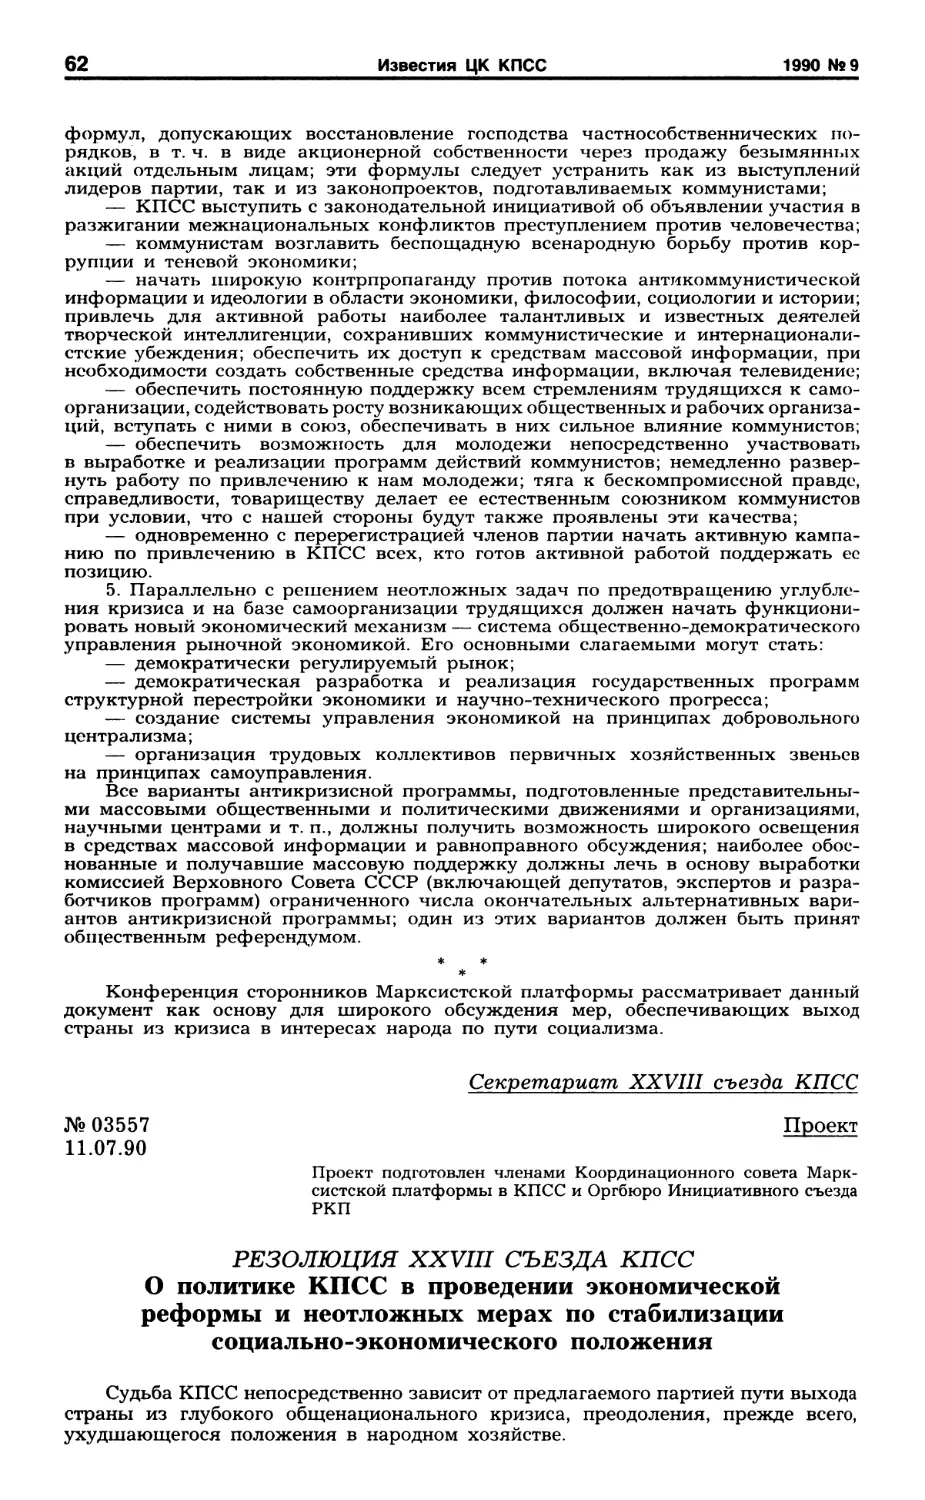 Проект резолюции съезда, подготовленный членами Координационного совета Марксистской платформы в КПСС и Оргбюро Инициативного съезда РКП